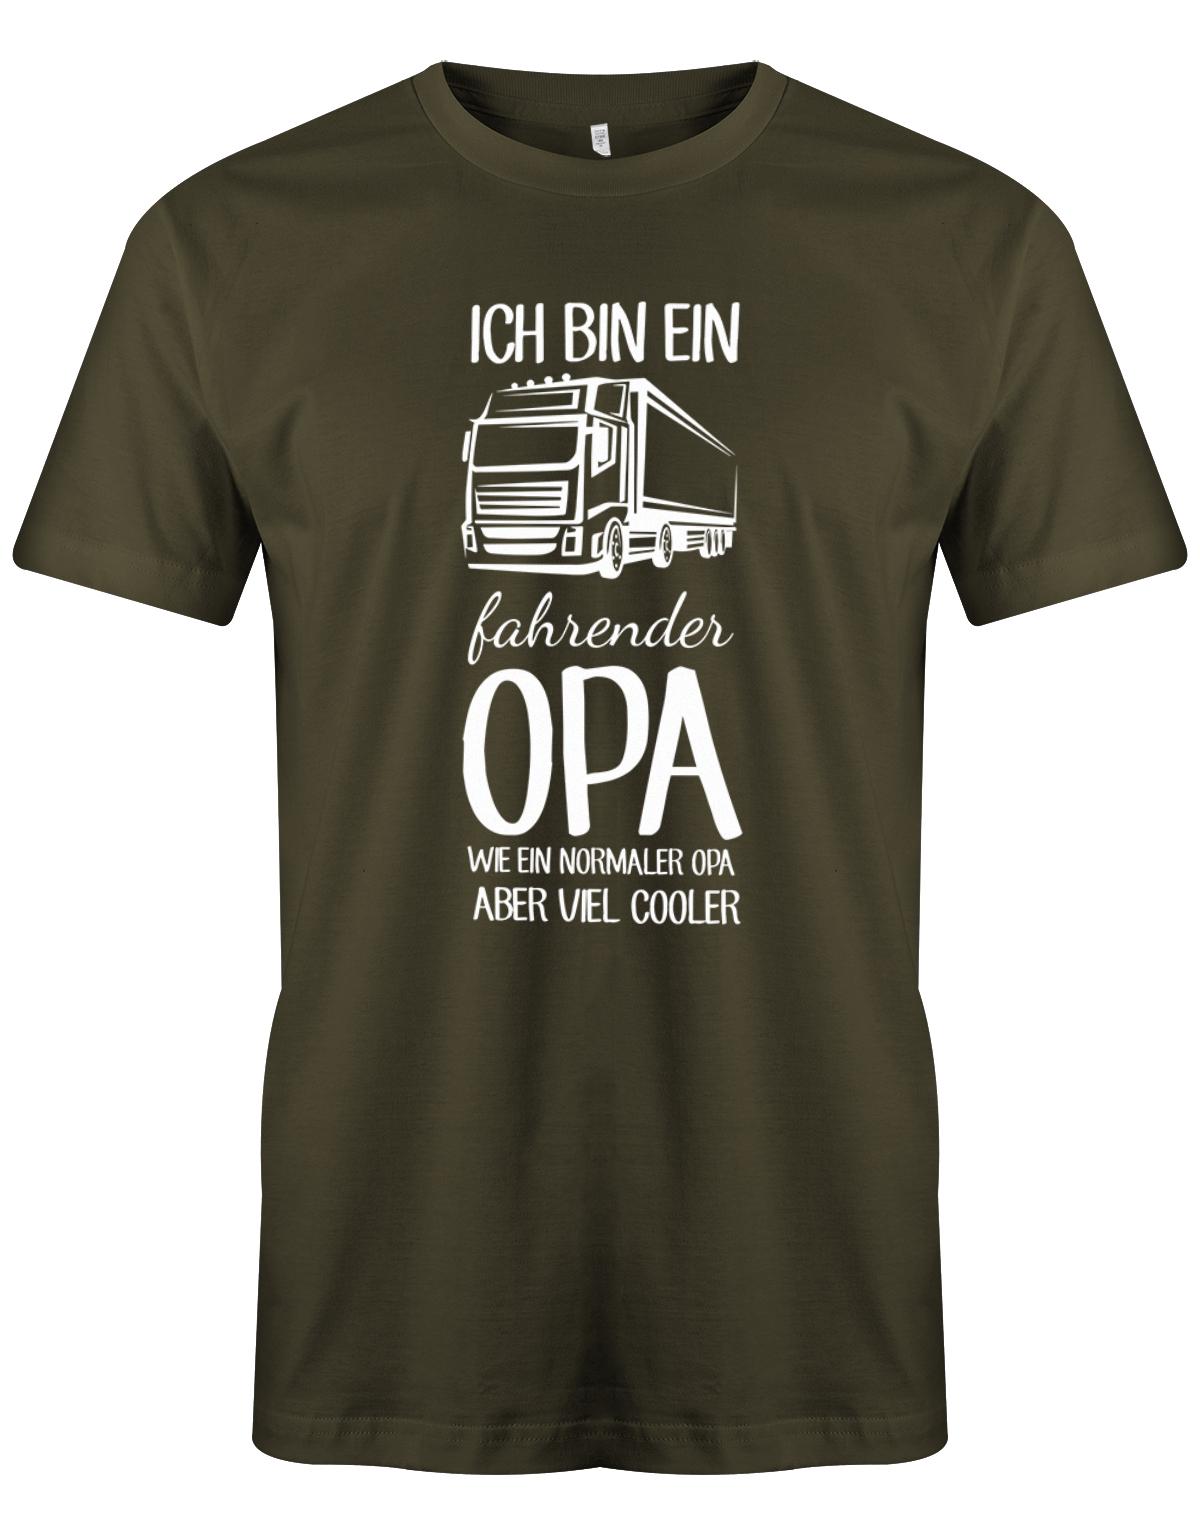 Ich bin ein LKW fahrender Opa wie ein normaler Opa aber viel cooler - Kraftfahrer - Herren T-Shirt Army